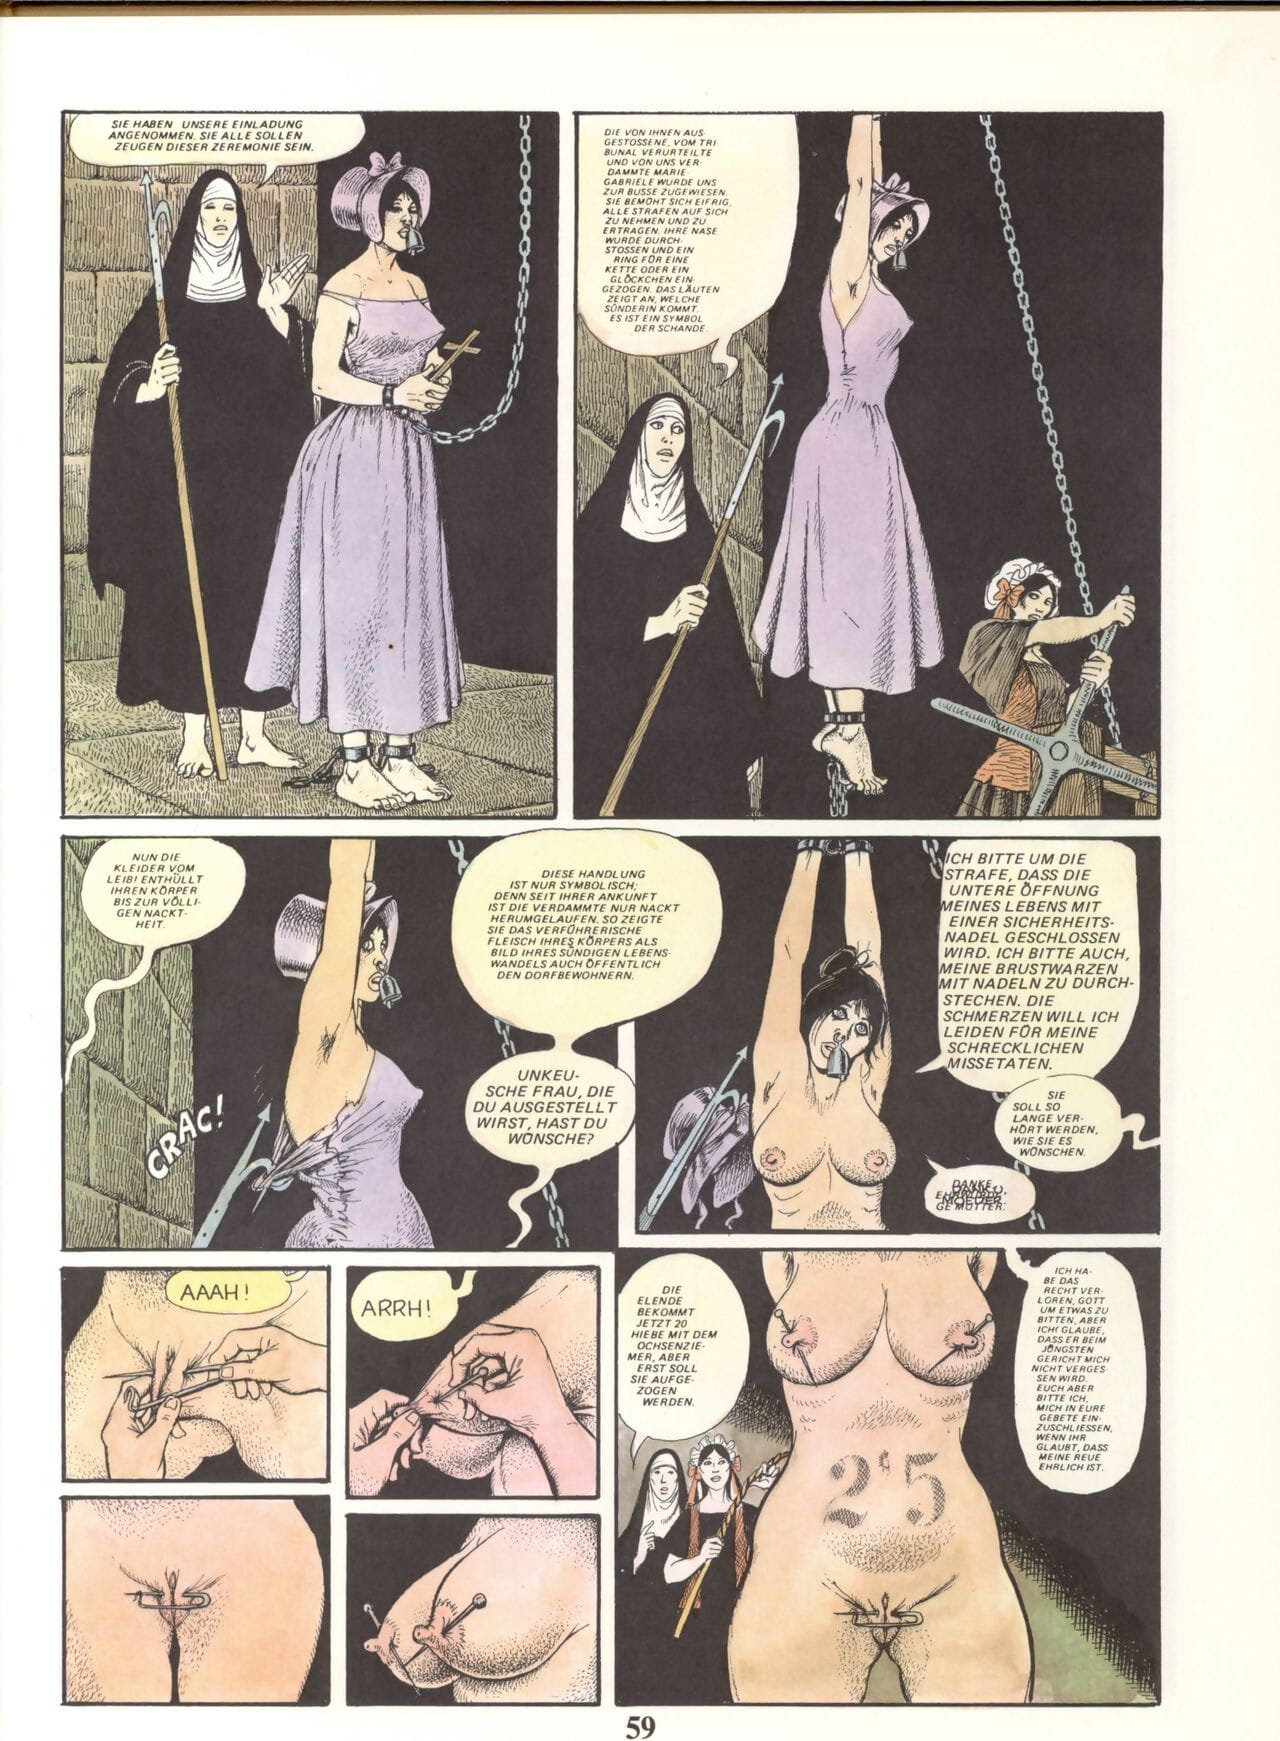 Marie Gabrielle De Saint eutrope #02 phần 3 page 1